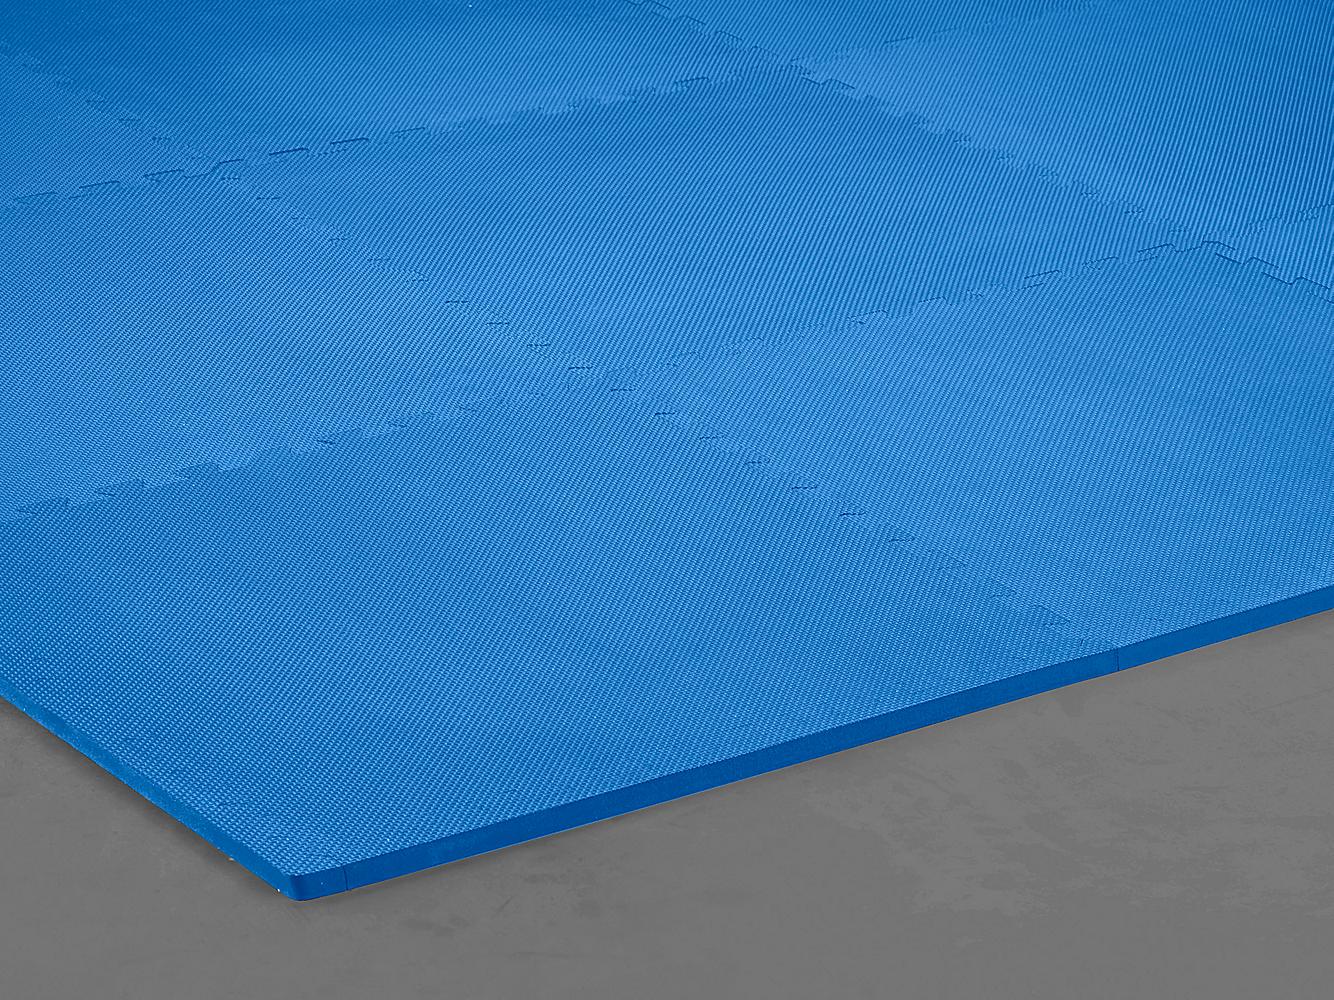 foam-floor-tiles-24-x-24-5-8-thick-blue-h-6536-uline